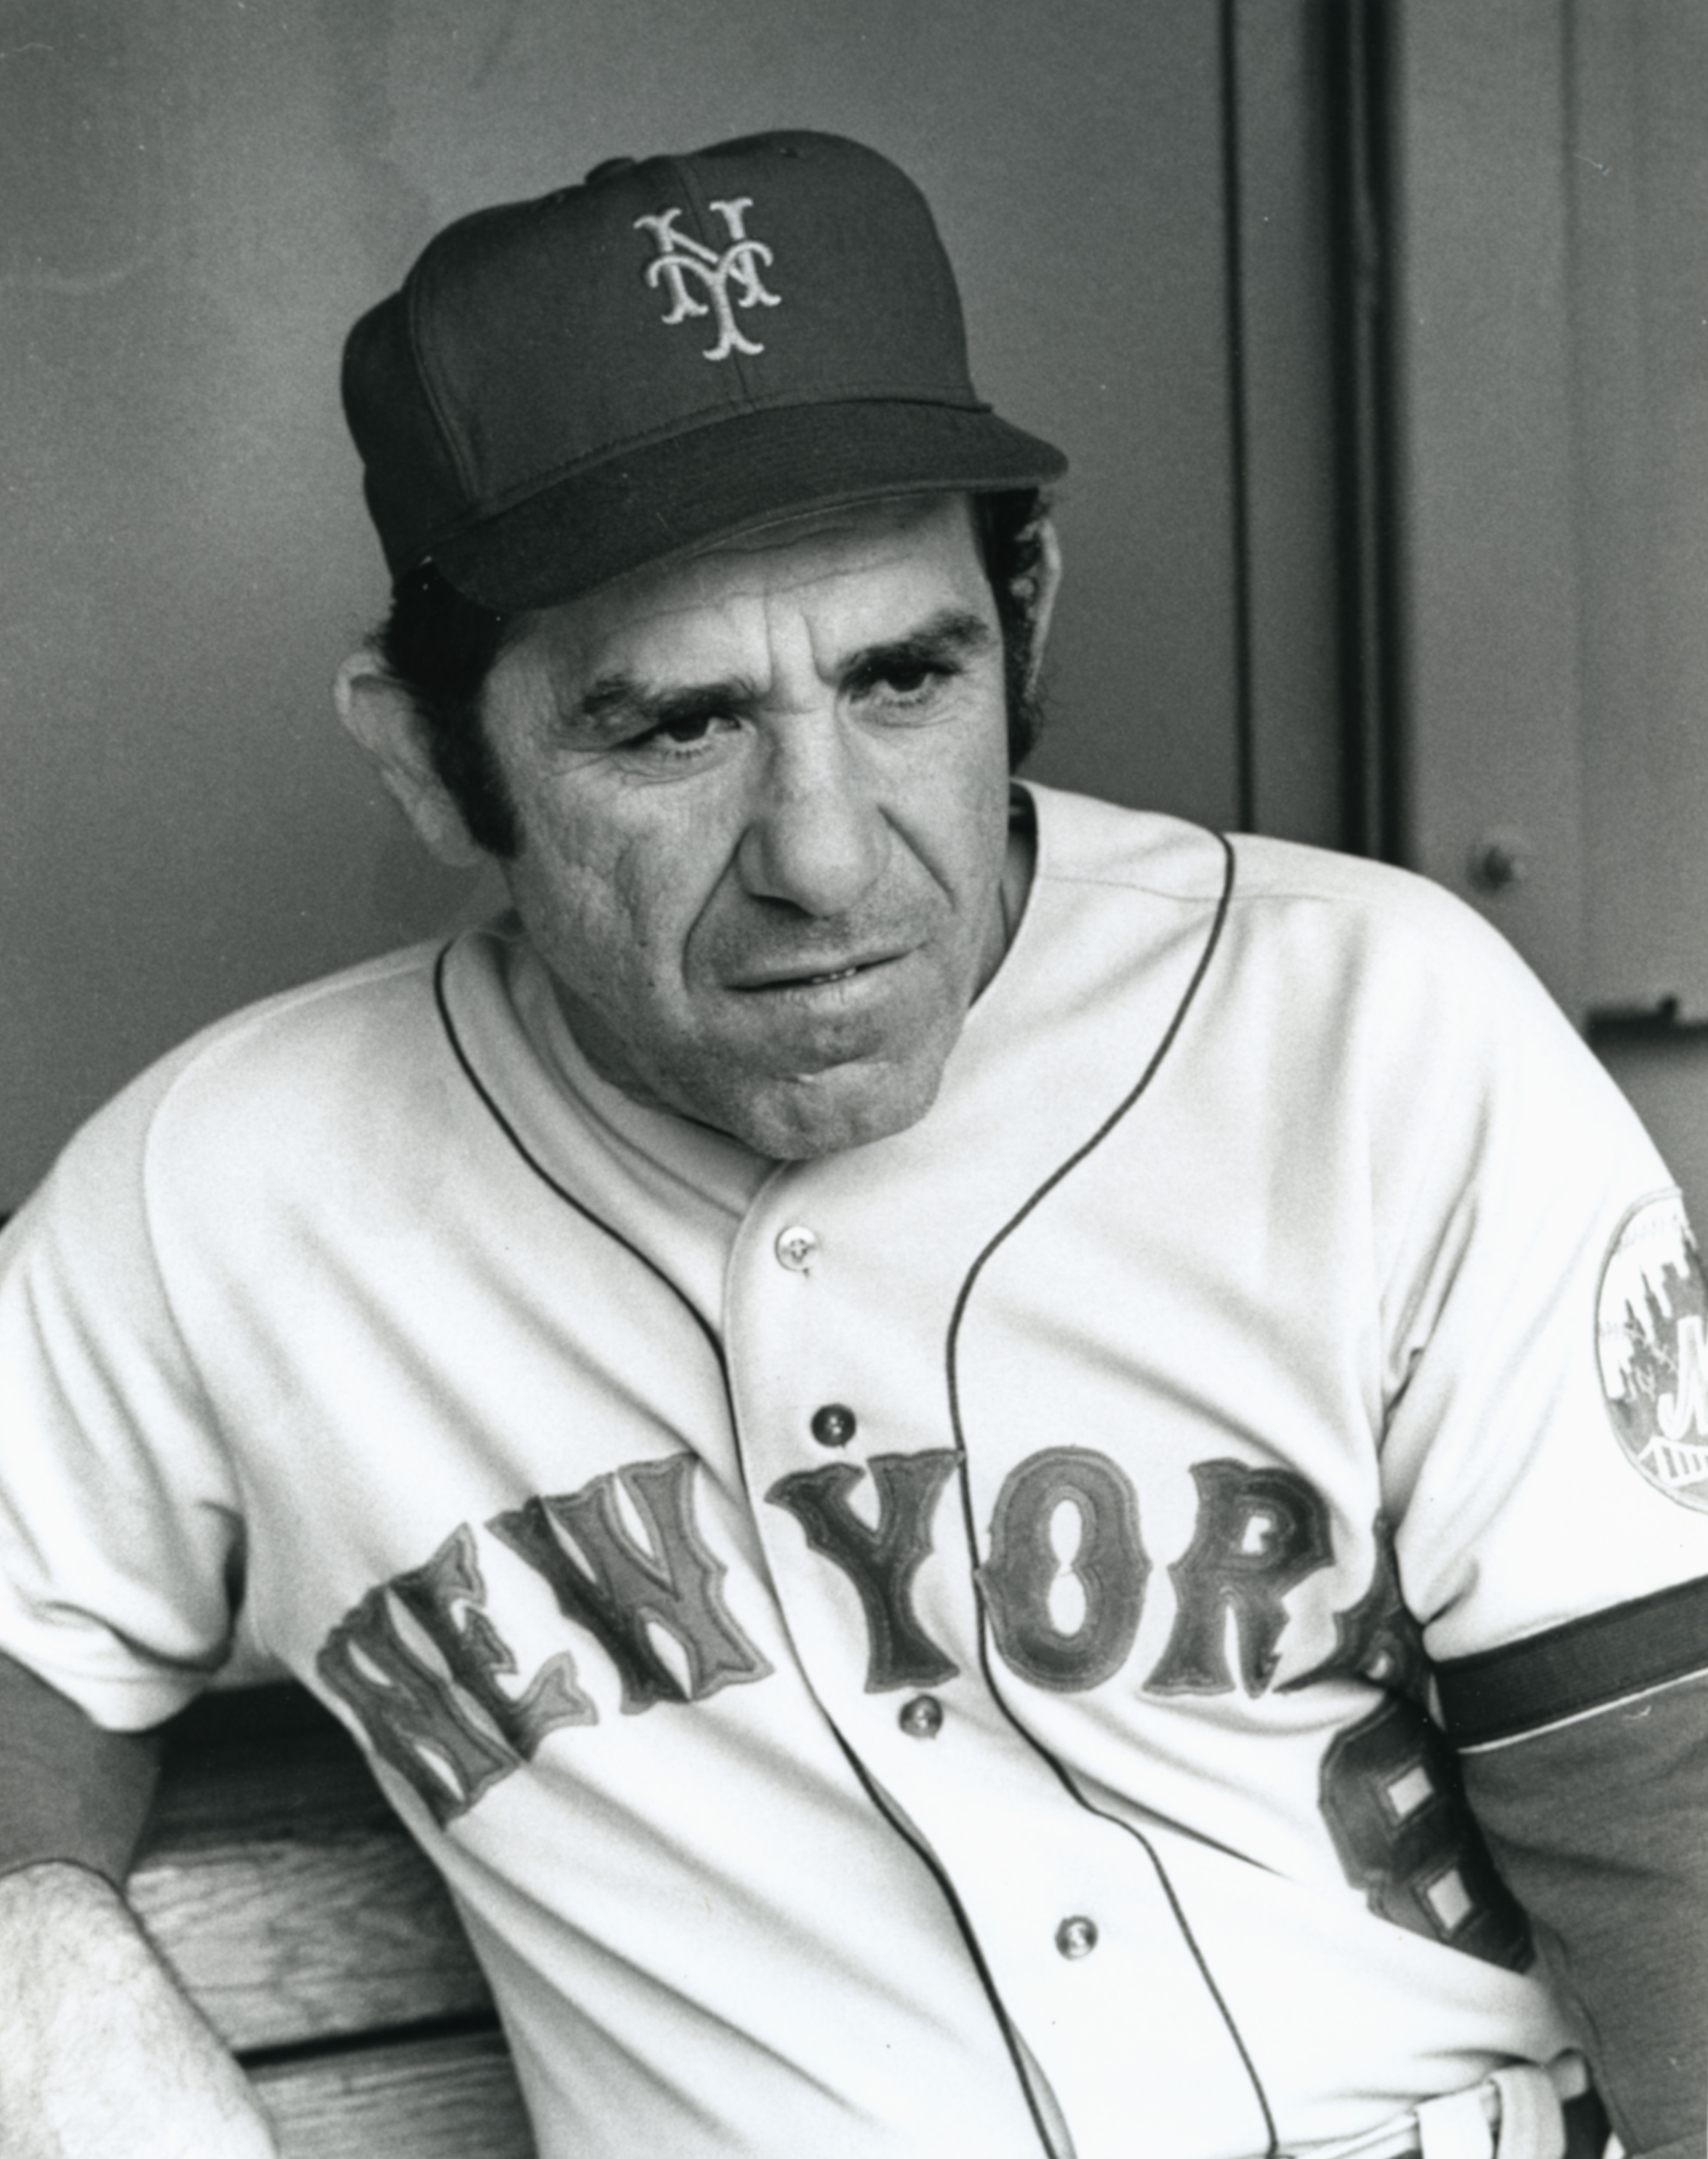 Yogi Berra, Hall of Famer and Yankees great, dies at 90